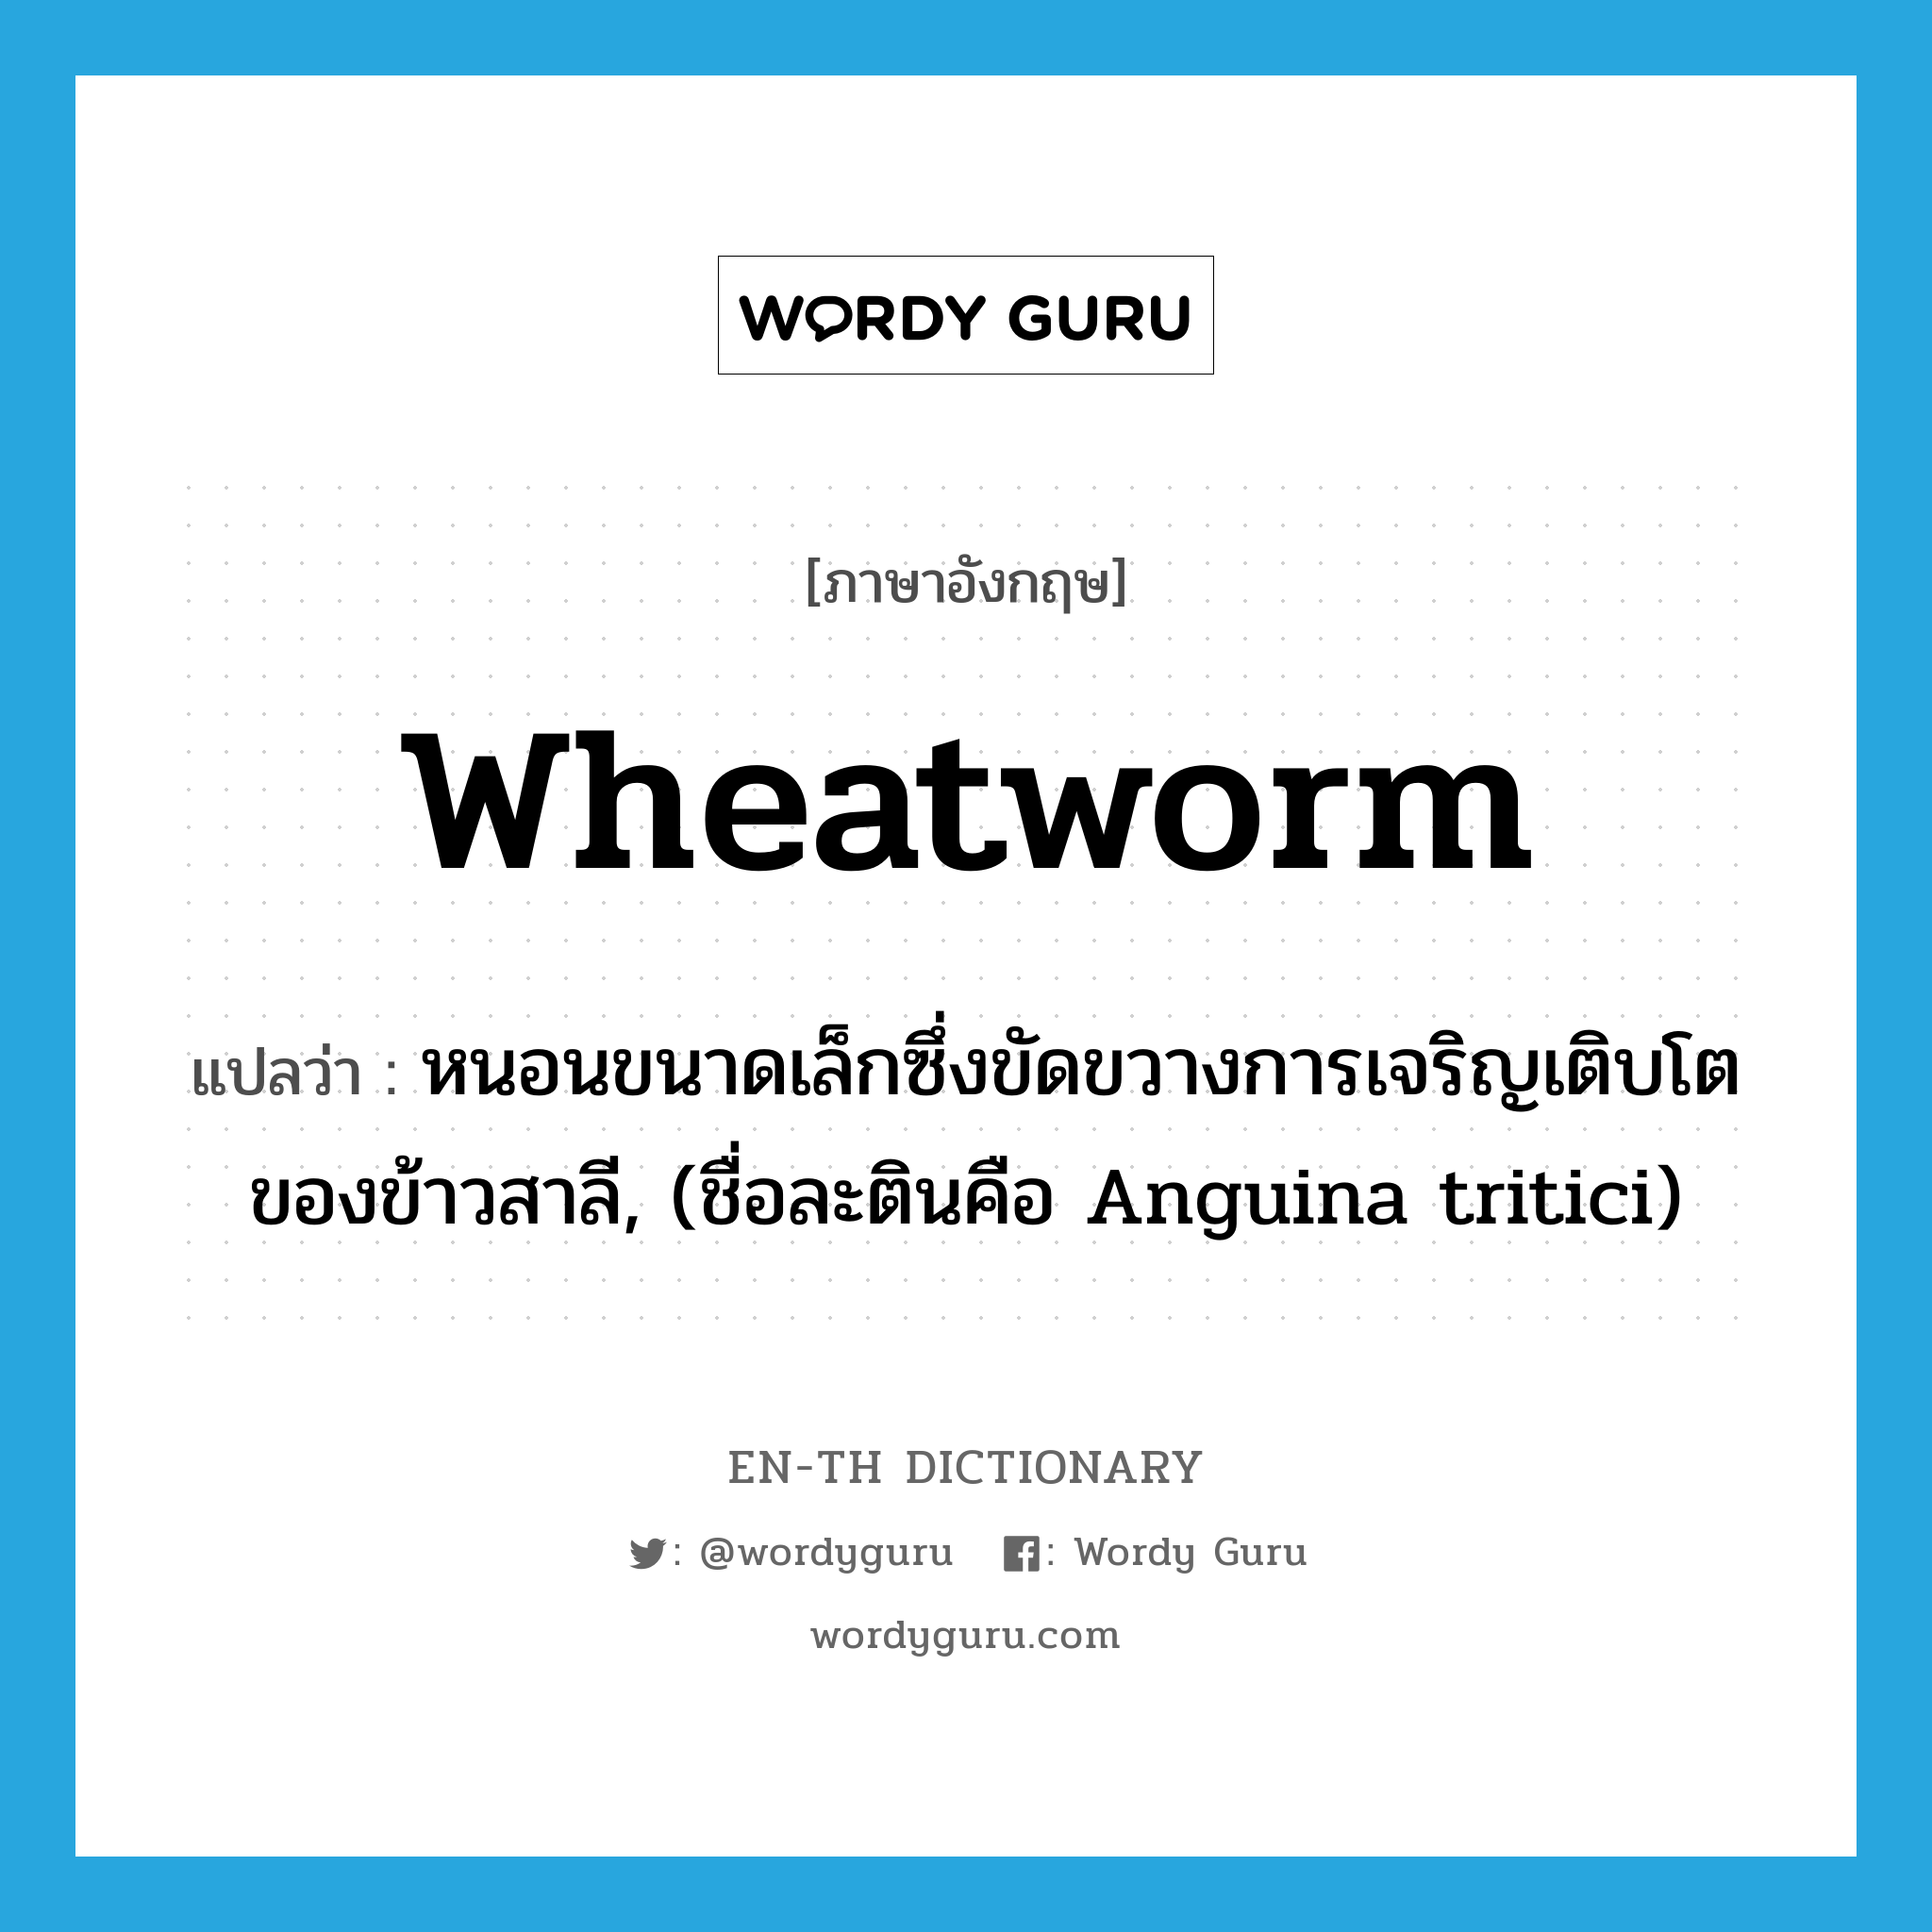 หนอนขนาดเล็กซึ่งขัดขวางการเจริญเติบโตของข้าวสาลี, (ชื่อละตินคือ Anguina tritici) ภาษาอังกฤษ?, คำศัพท์ภาษาอังกฤษ หนอนขนาดเล็กซึ่งขัดขวางการเจริญเติบโตของข้าวสาลี, (ชื่อละตินคือ Anguina tritici) แปลว่า wheatworm ประเภท N หมวด N